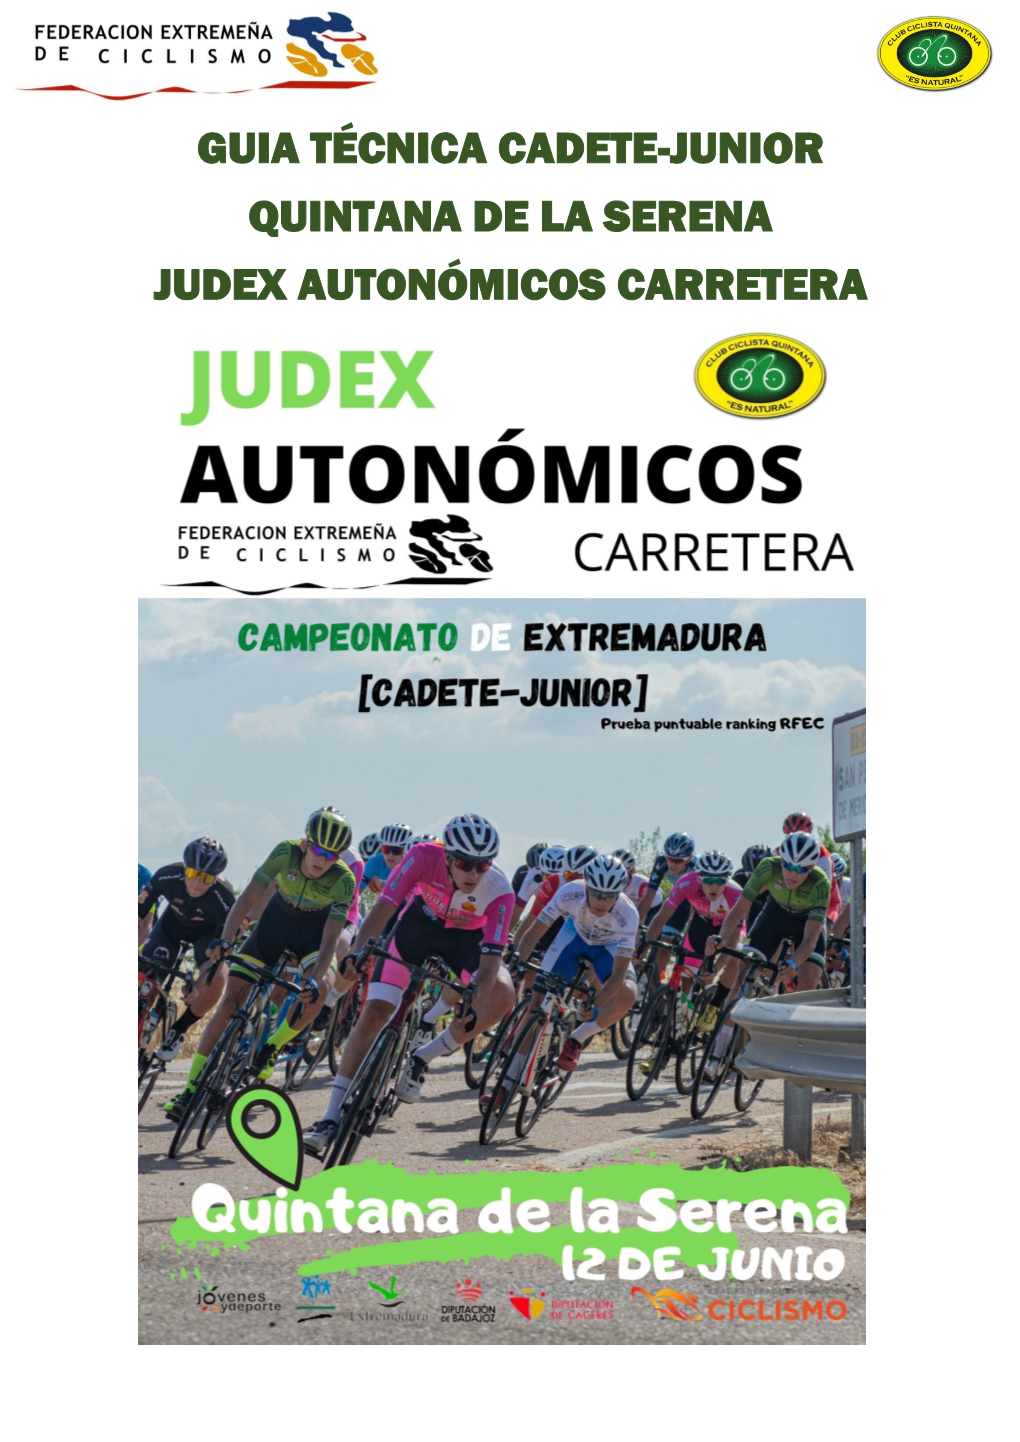 Guia Técnica Cadete-Junior Quintana De La Serena Judex Autonómicos Carretera